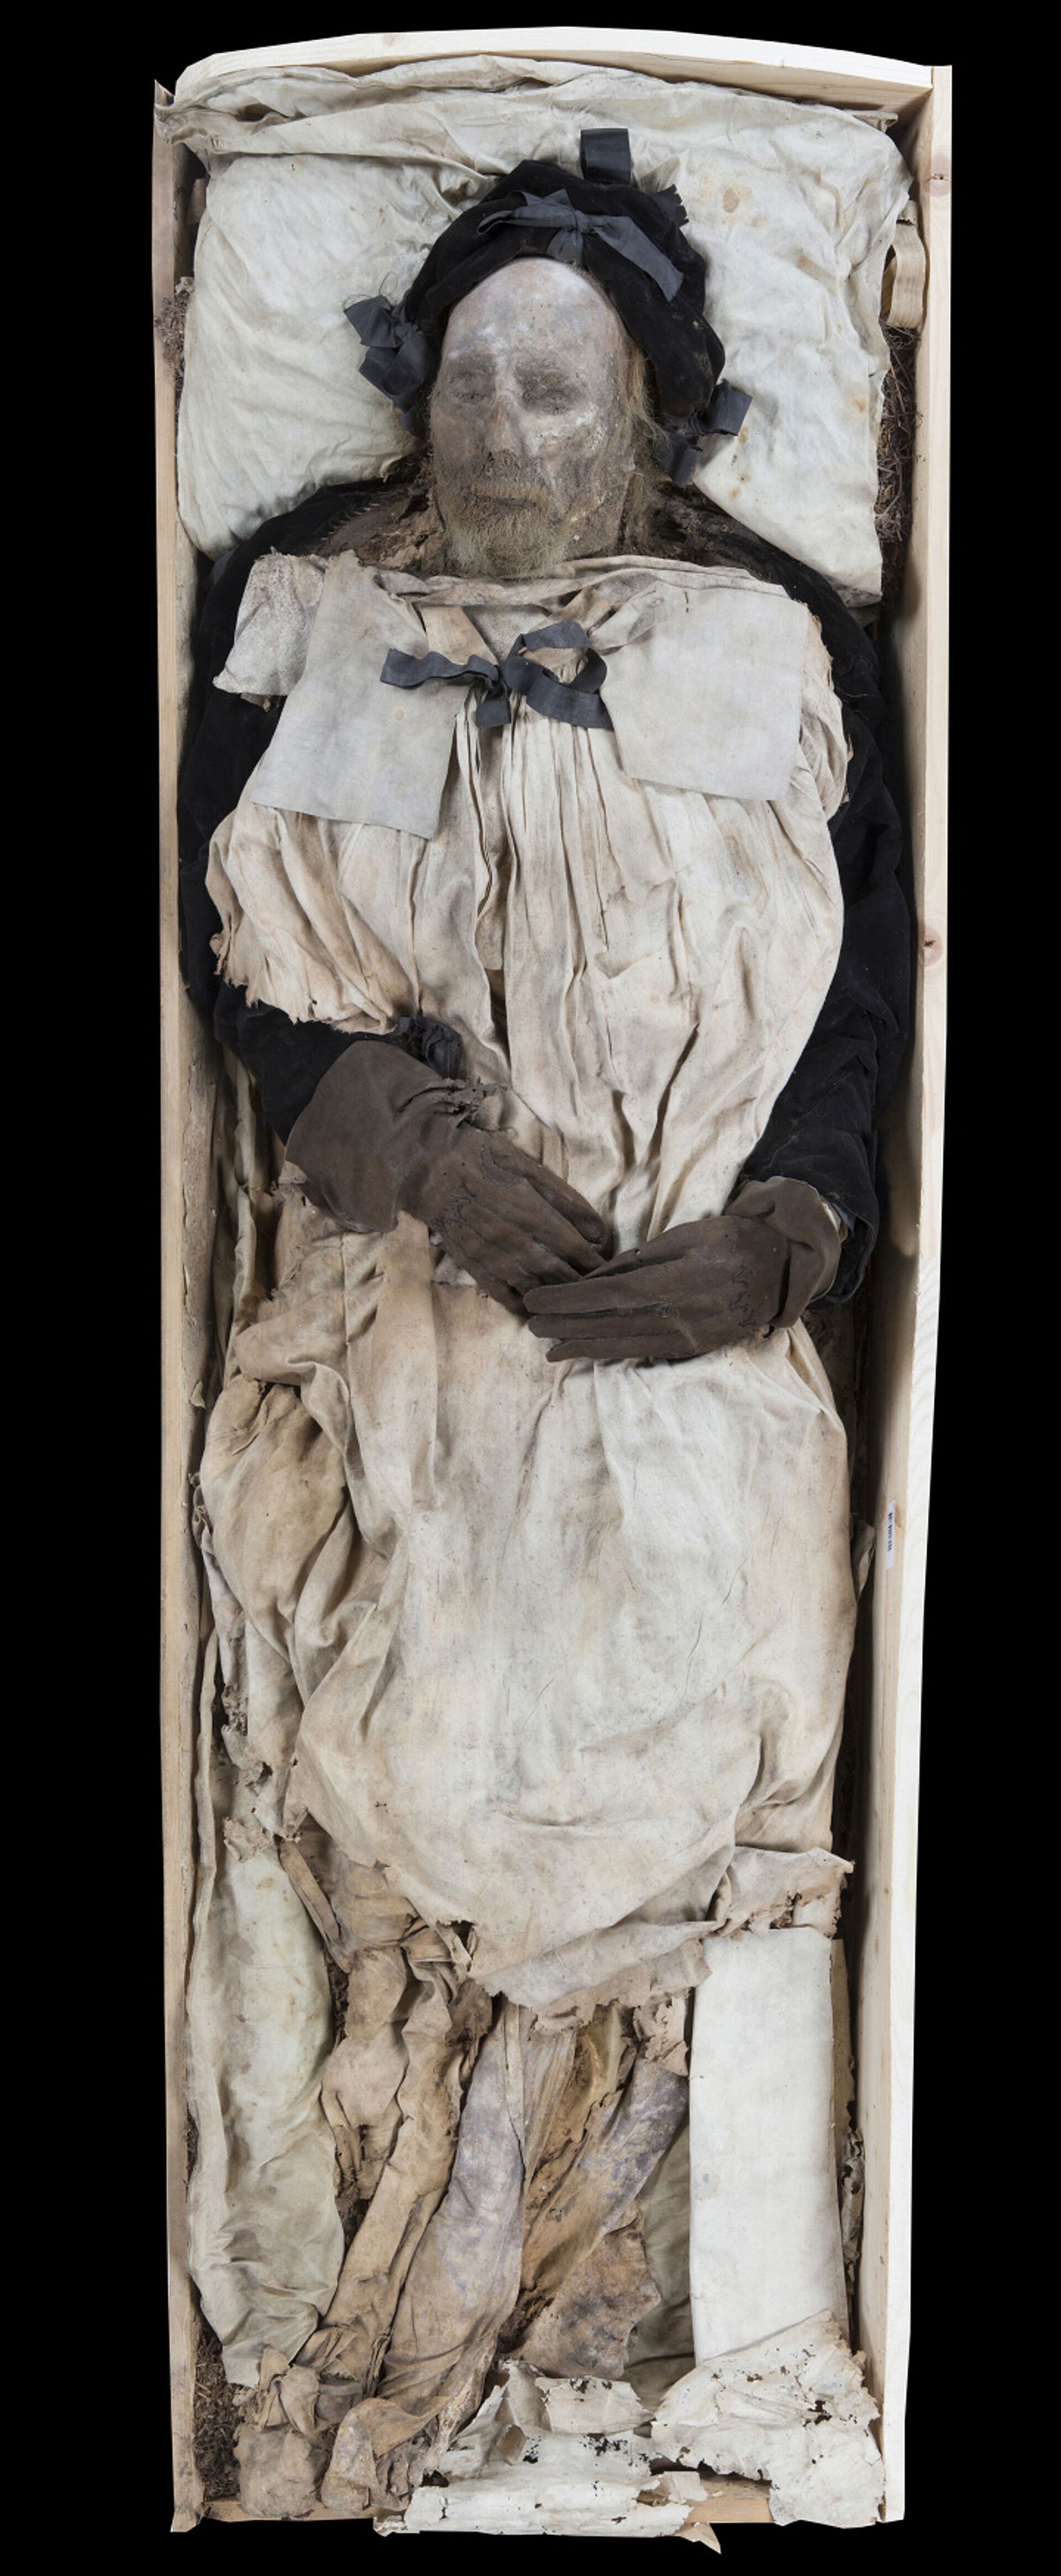 Levou para cova? DNA revela parentesco entre bispo sueco do século XVII e feto em seu caixão (FOTOS) - Sputnik Brasil, 1920, 08.04.2021